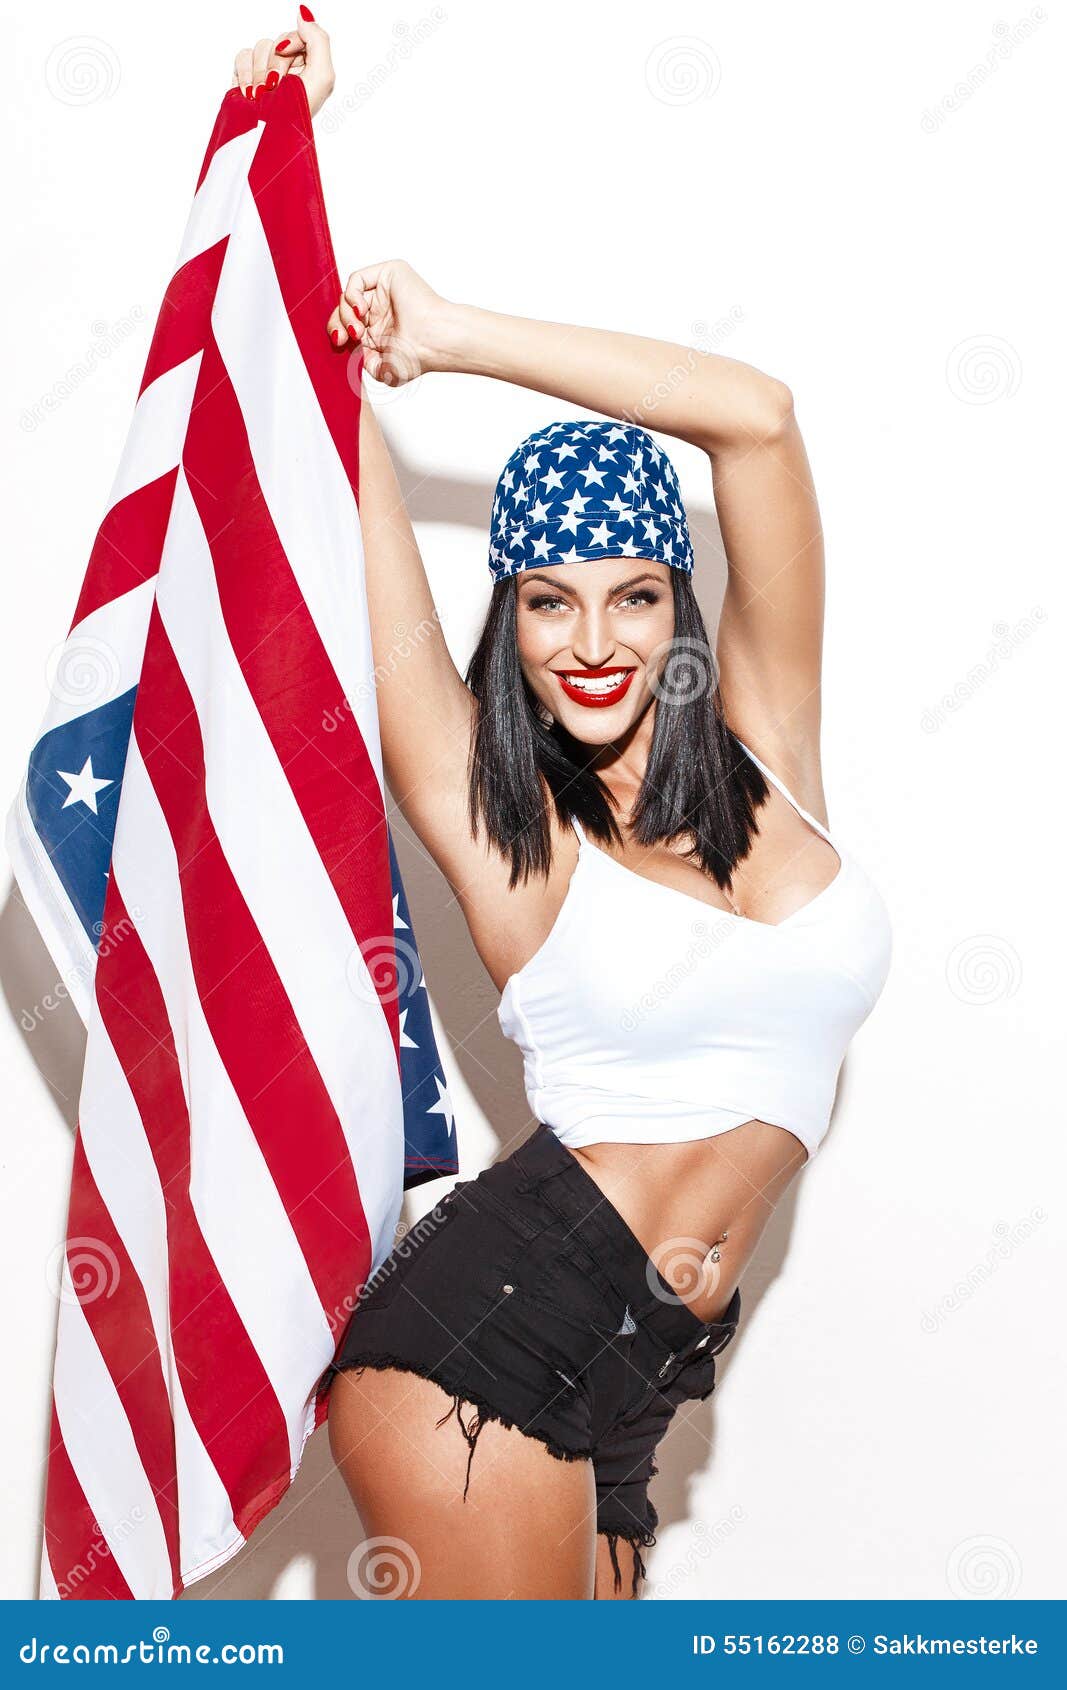 hot girl holding american flag